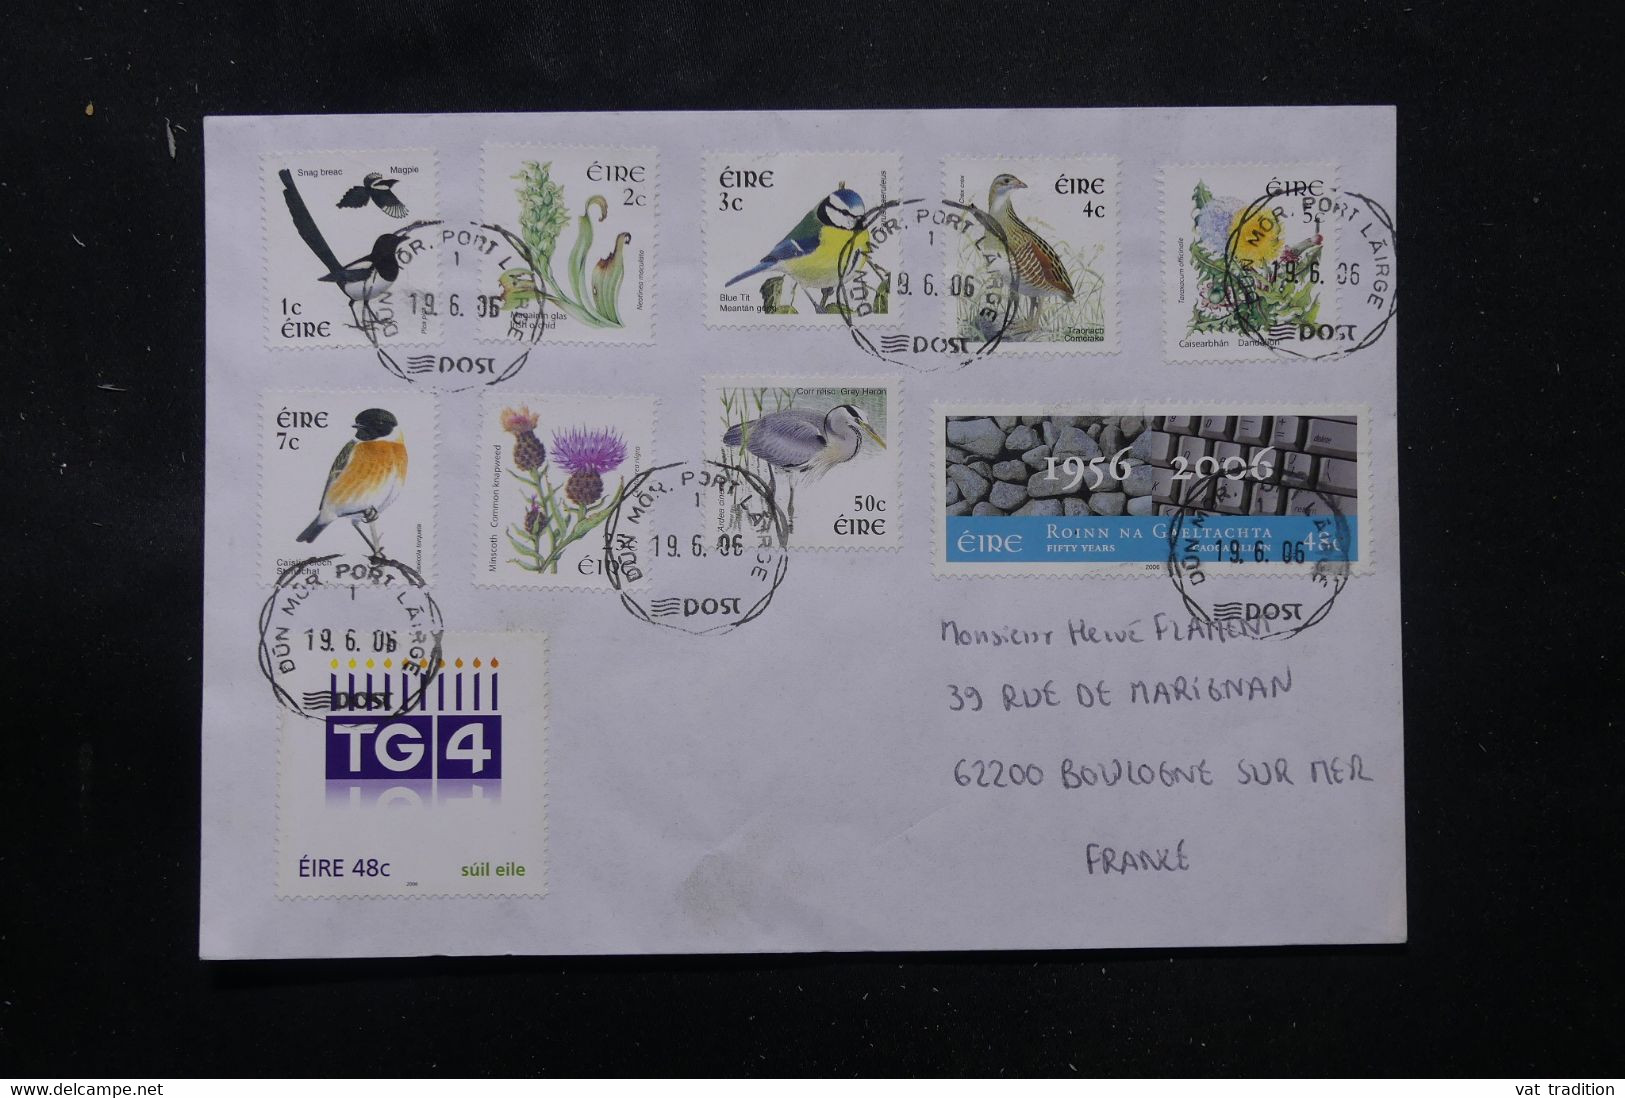 IRLANDE - Enveloppe Pour La France En 2006, Affranchissement Plaisant Dont Oiseaux - L 76295 - Briefe U. Dokumente